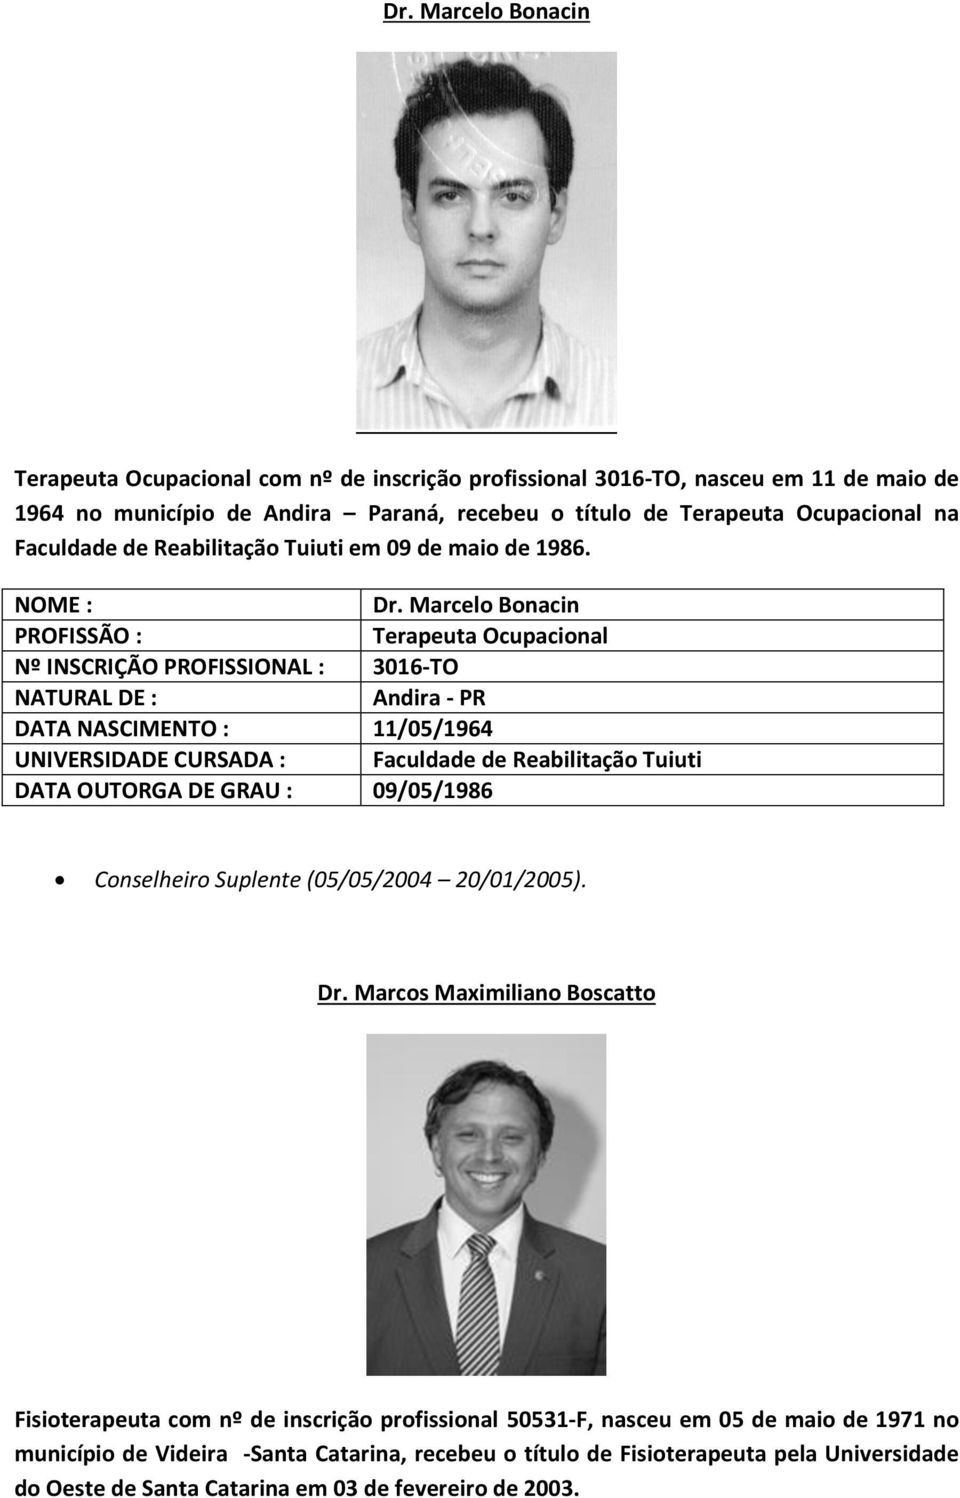 Marcelo Bonacin Terapeuta Ocupacional Nº INSCRIÇÃO PROFISSIONAL : 3016-TO Andira - PR DATA NASCIMENTO : 11/05/1964 UNIVERSIDADE CURSADA : Faculdade de Reabilitação Tuiuti DATA OUTORGA